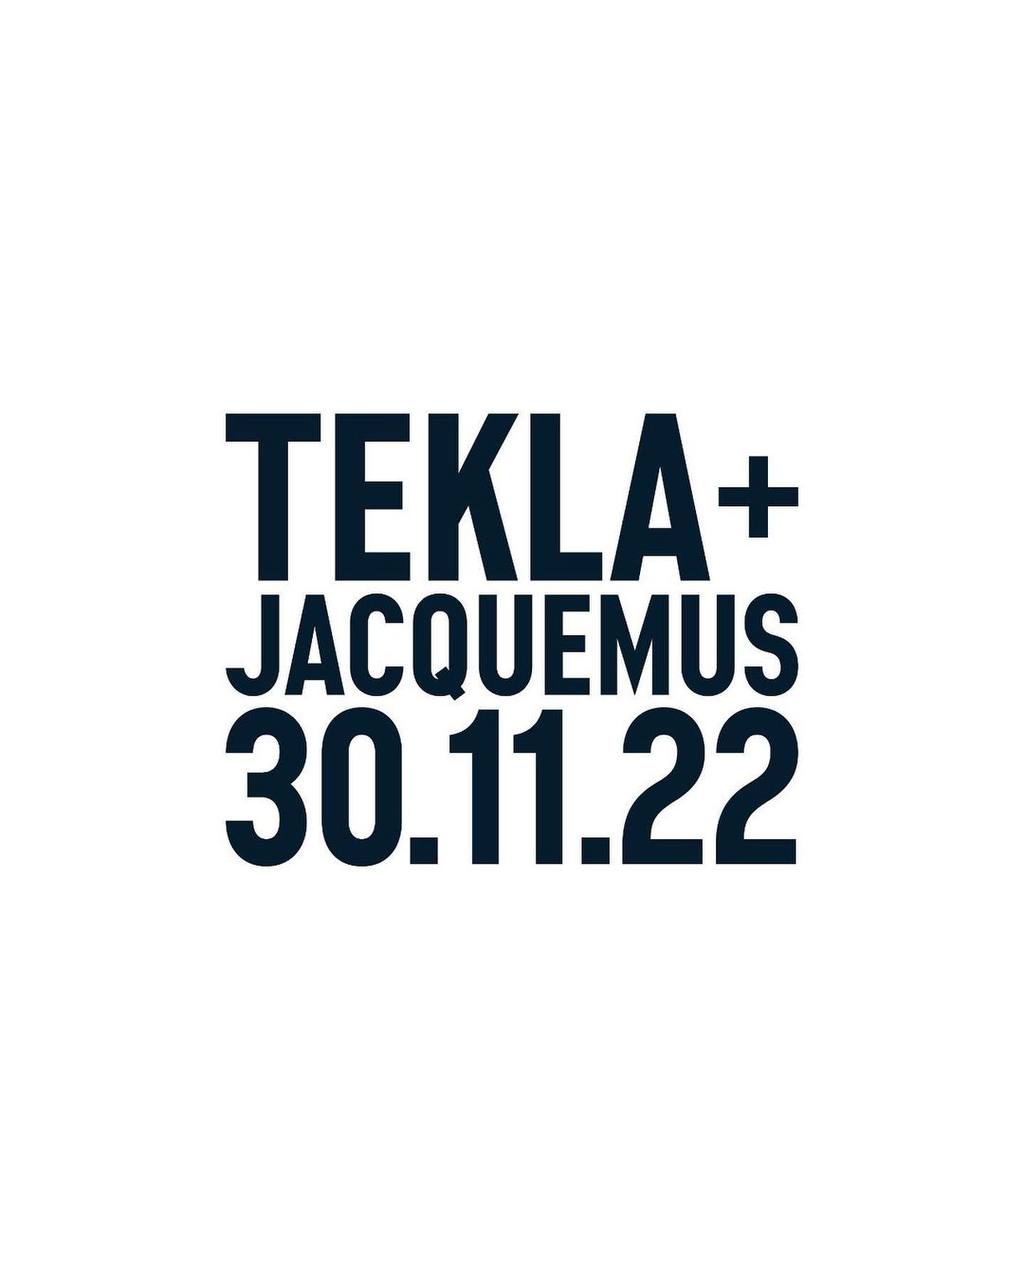 Jacquemus анонсировал коллаборацию с Tekla и выход новой сумки (фото 1)